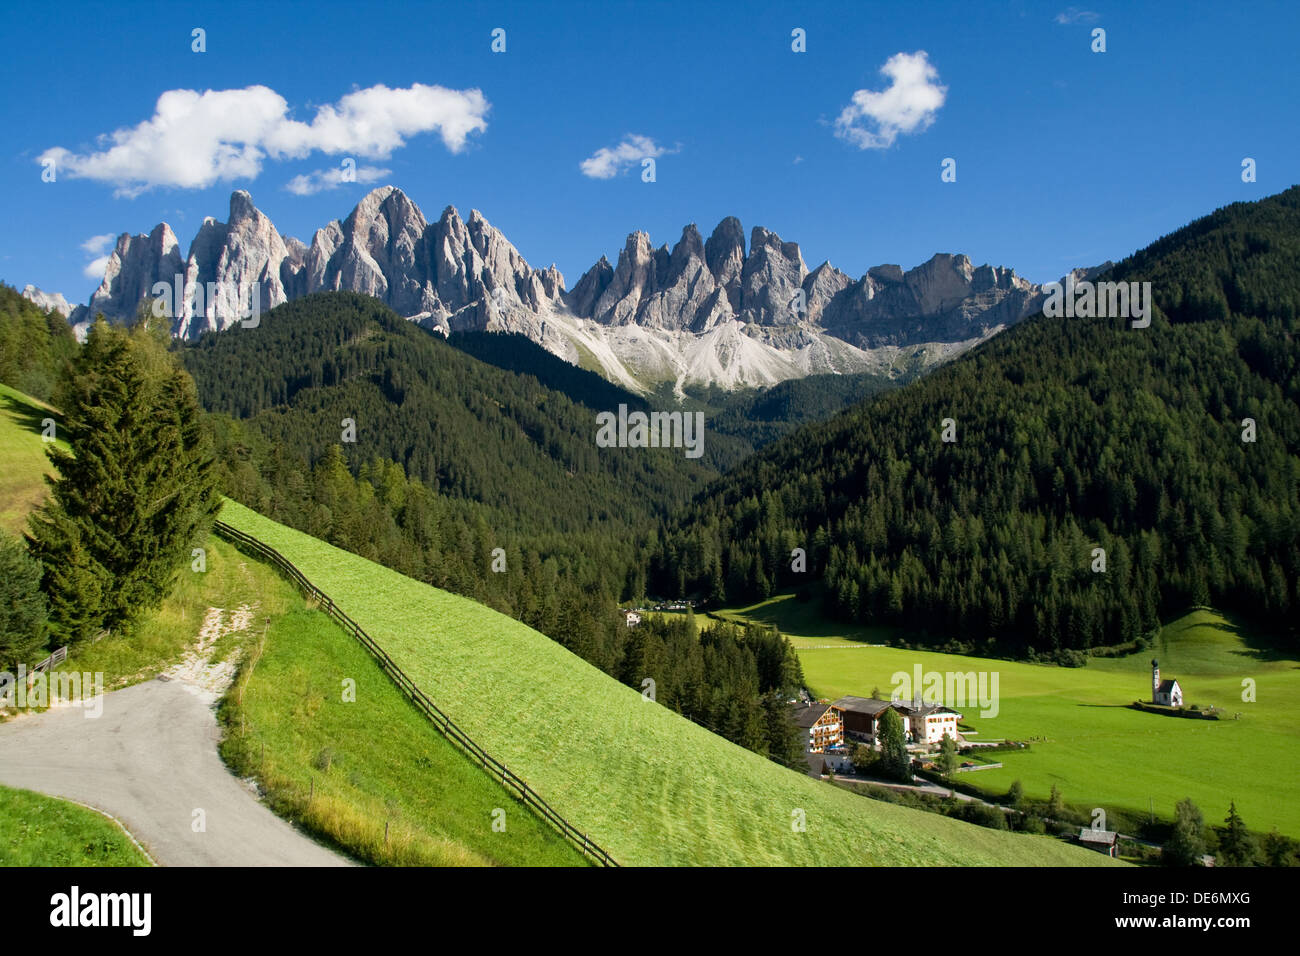 Vallée de Funes (Villnoss) avec les Odle montagnes en arrière-plan, Dolomites, Italie. Banque D'Images